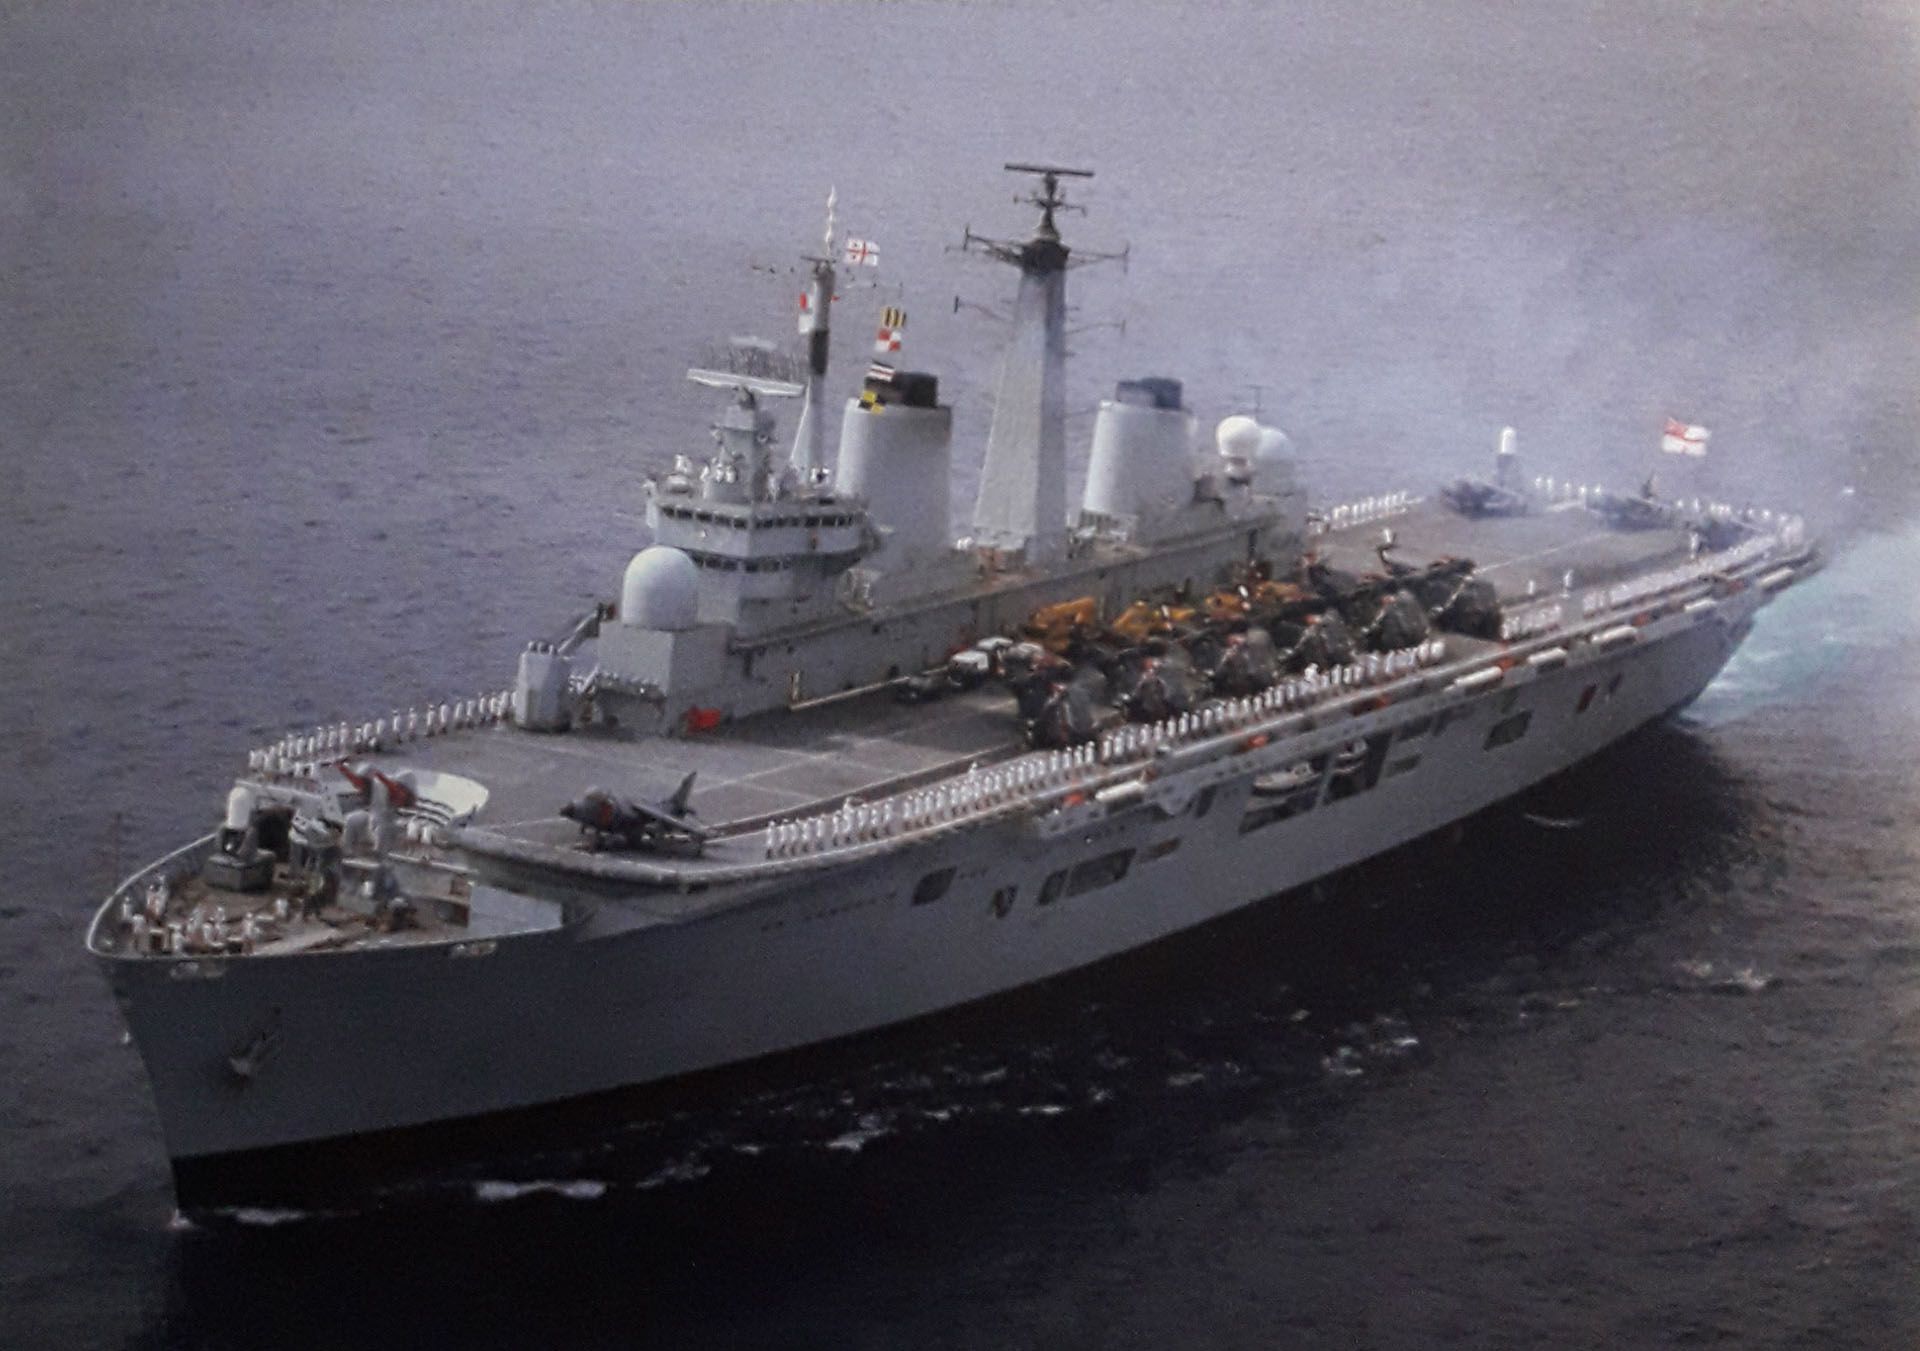 El portaaviones HMS Invencible, símbolo del poderío naval británico